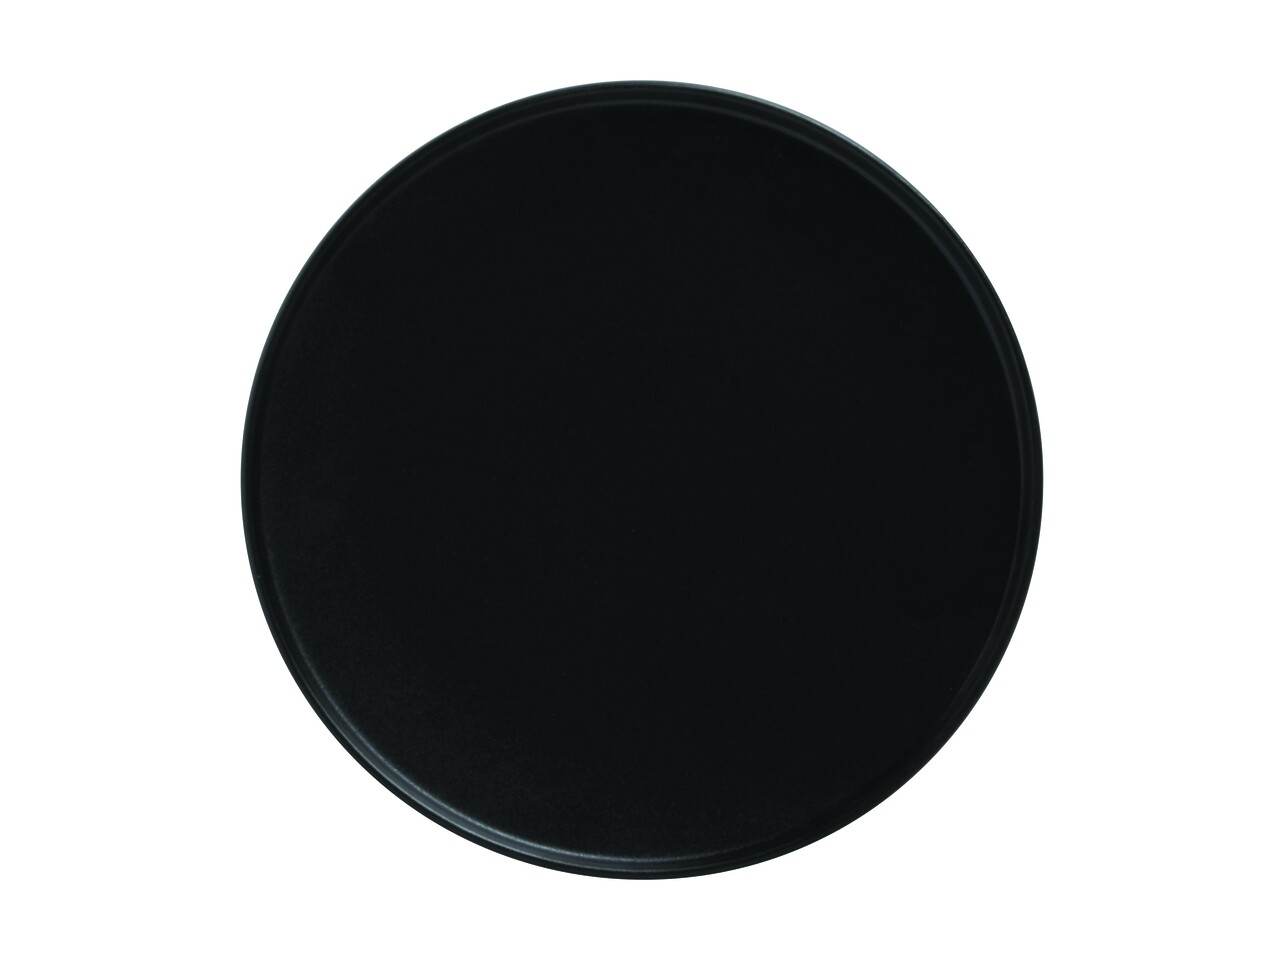 Stretch tányér, Maxwell & Williams, Kaviár, 21 cm Ø, fekete